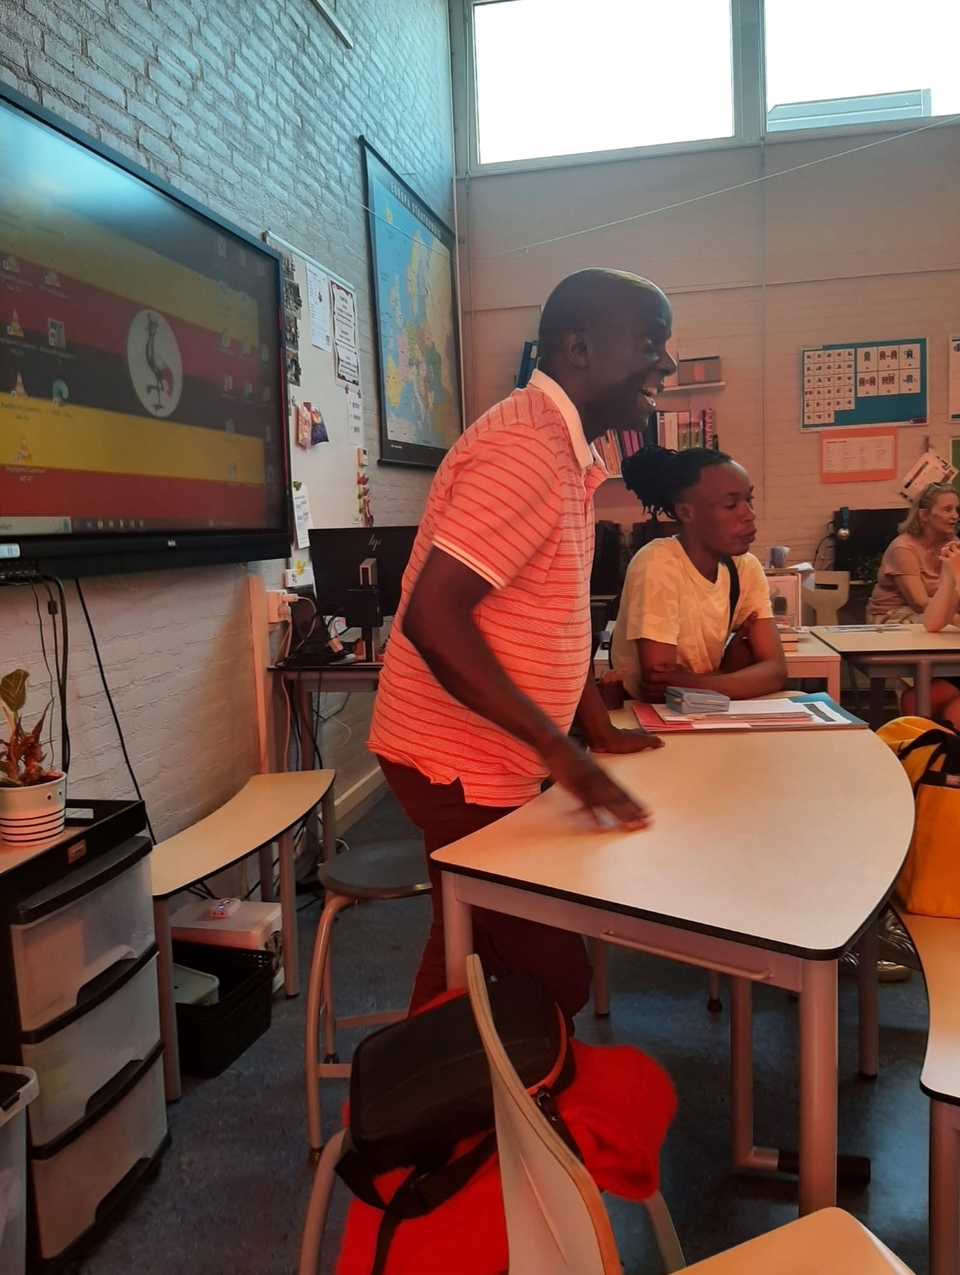 Wij hadden vandaag zeer bijzondere gasten. Francis en Michael waren samen met #CarolinevanDuuren van #StichtingMiaNederland naar 't Padland gekomen om meer te vertellen over hun Stichting en school in Oeganda. We, leerlingen en leerkrachten van groep 7, hebben heel veel gehoord over de school en het leven in Oeganda.  De leerlingen waren muisstil en konden alles heel goed volgen. Ook werden er vragen, keurig netjes,  in het Engels gesteld. Na de presentatie in de klas hebben we met de hele school gedanst op het schoolplein. Hoe bijzonder en bijzonder leerzaam en leuk was dit. Lieve gasten,  dank voor jullie komst,  we weten zeker dat jullie een enorme indruk hebben achtergelaten.